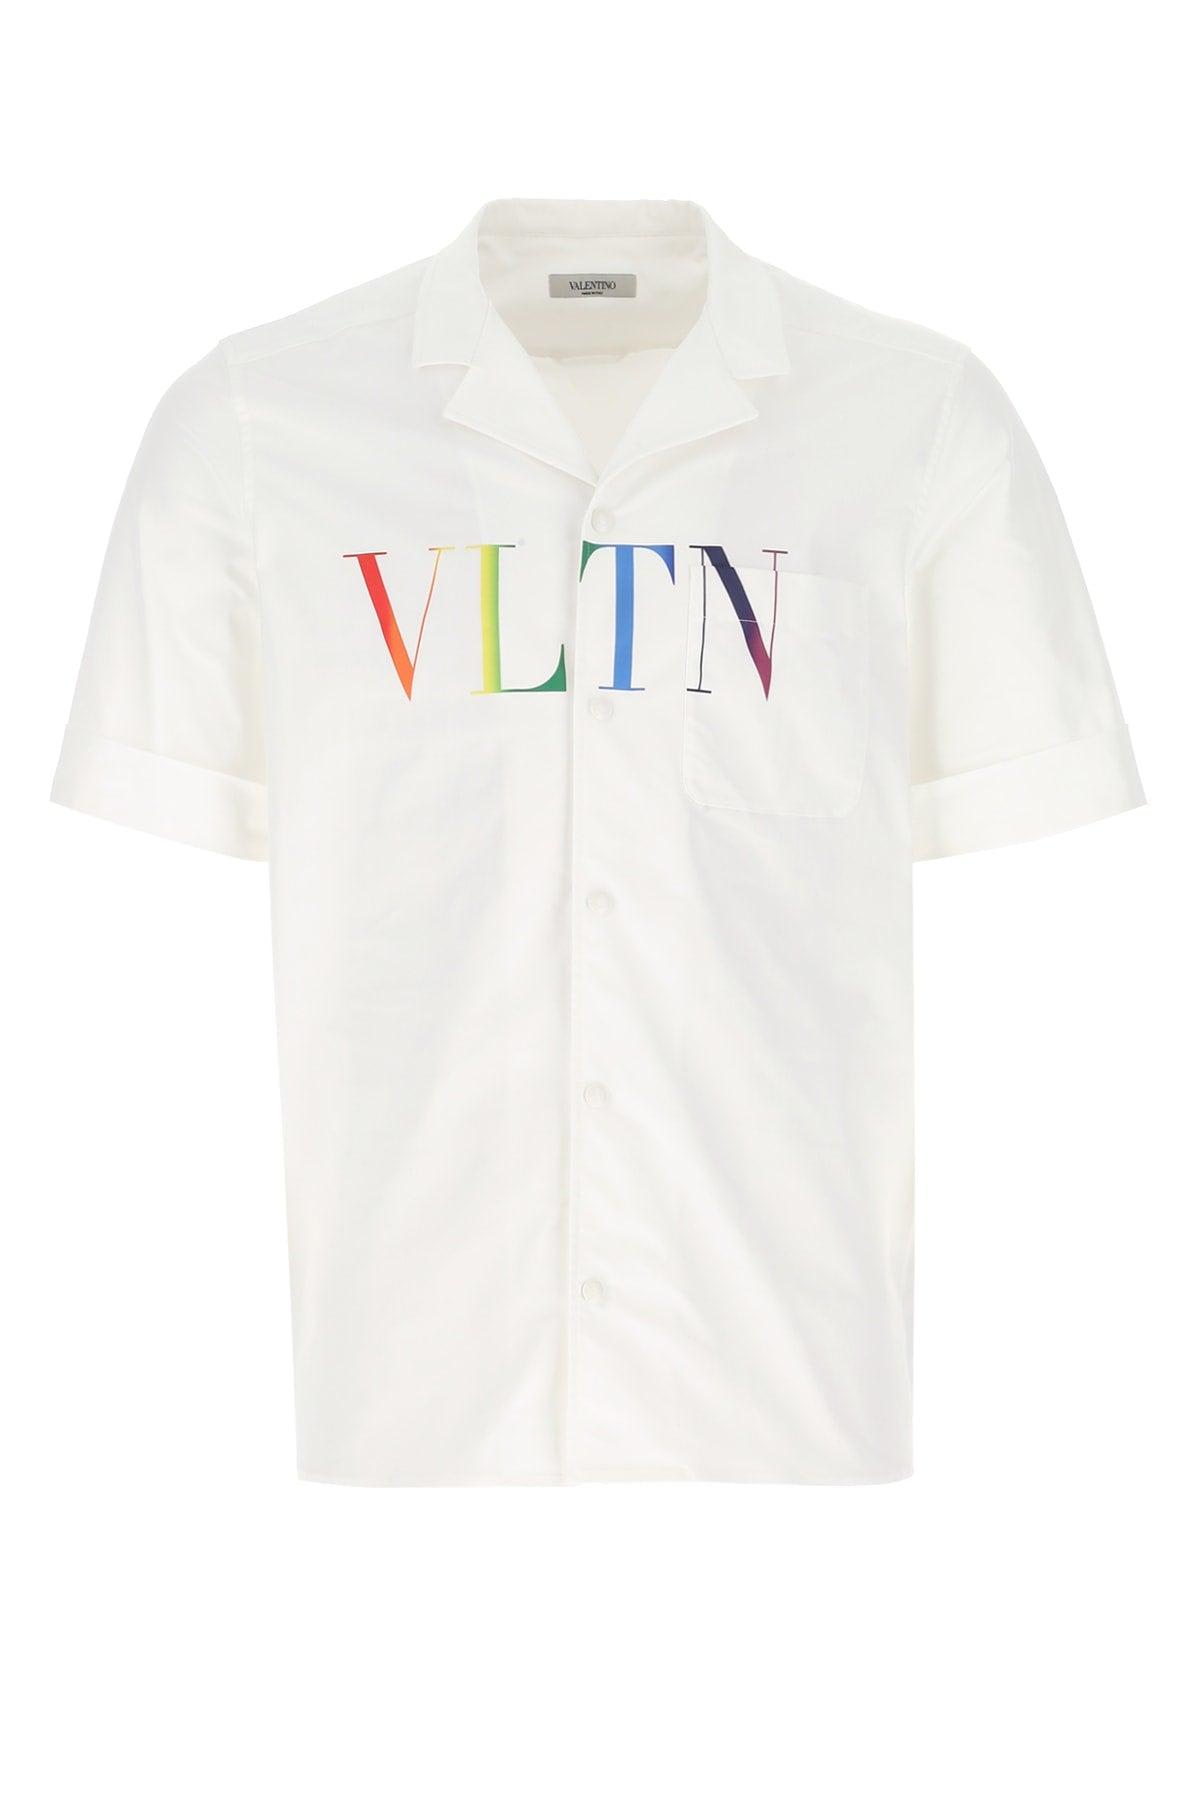 Valentino Garavani Vltn Print Short-sleeve Shirt